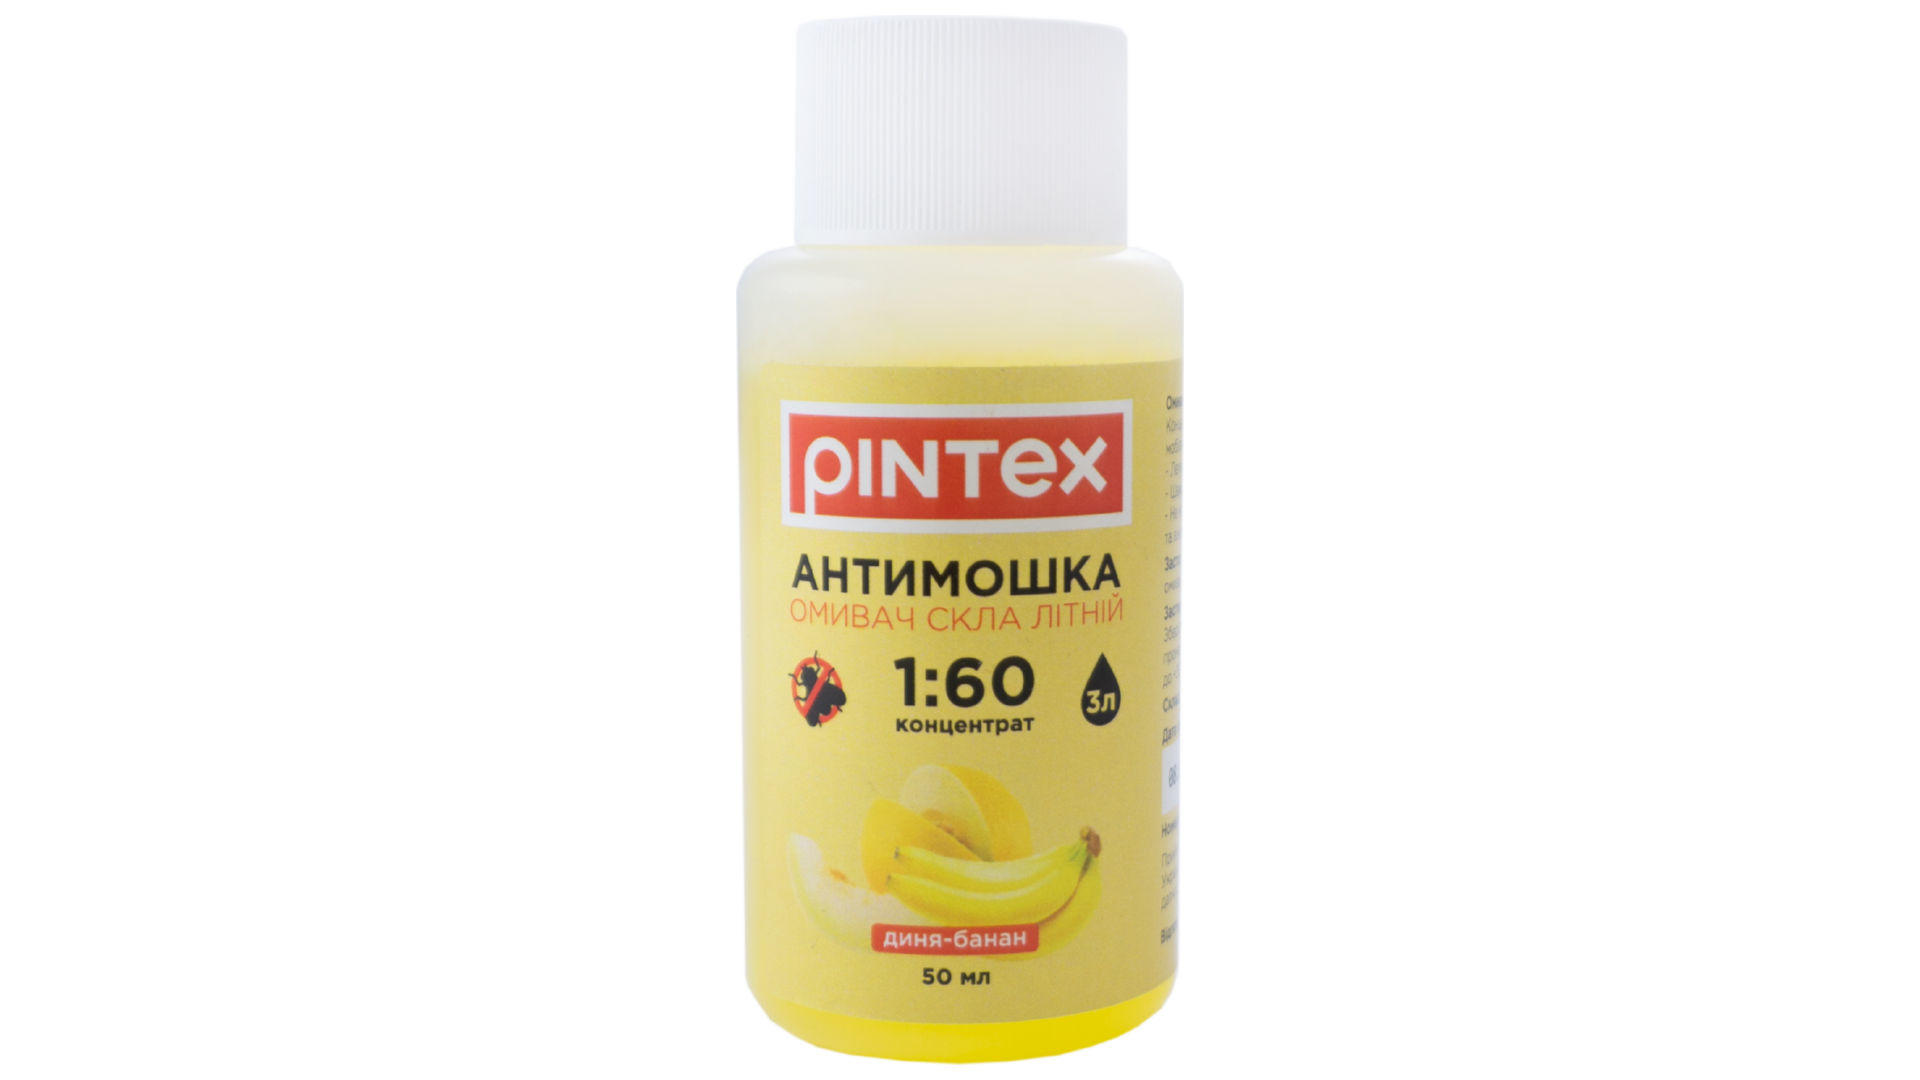 Омыватель стекла антимошка Pintex - 50 мл 1:60 банан-дыня 3